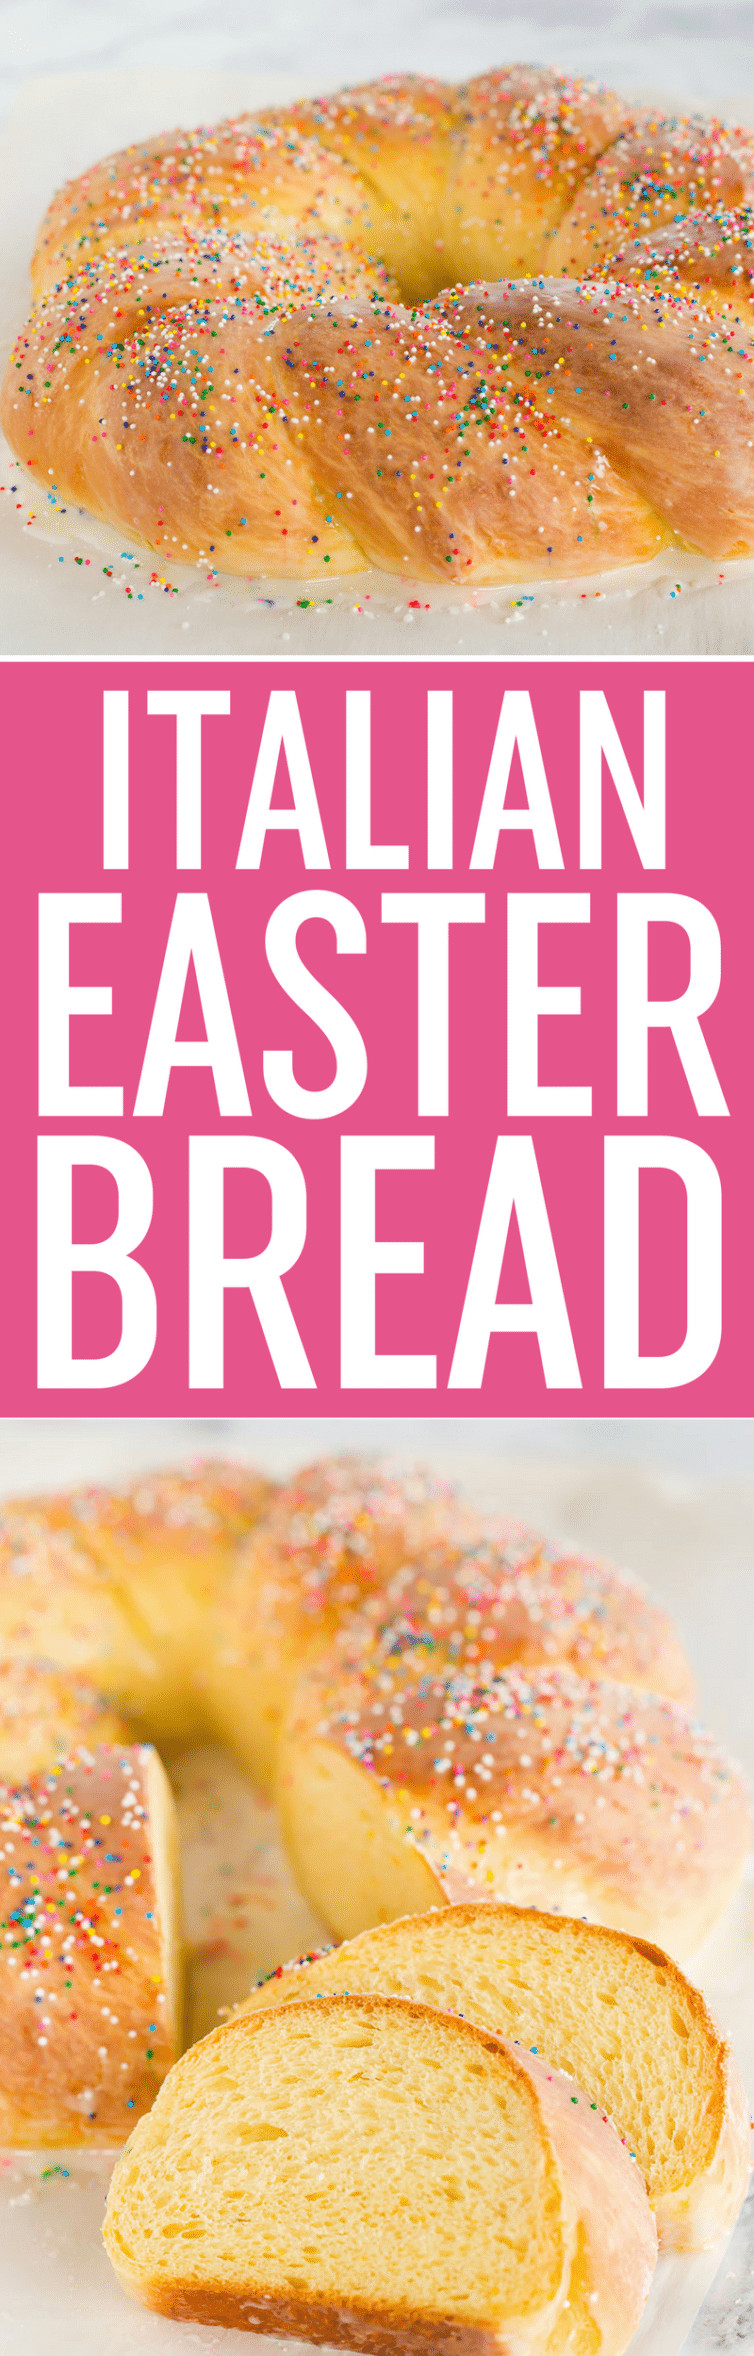 Italian Easter Bread Name
 Italian Easter Bread Recipe